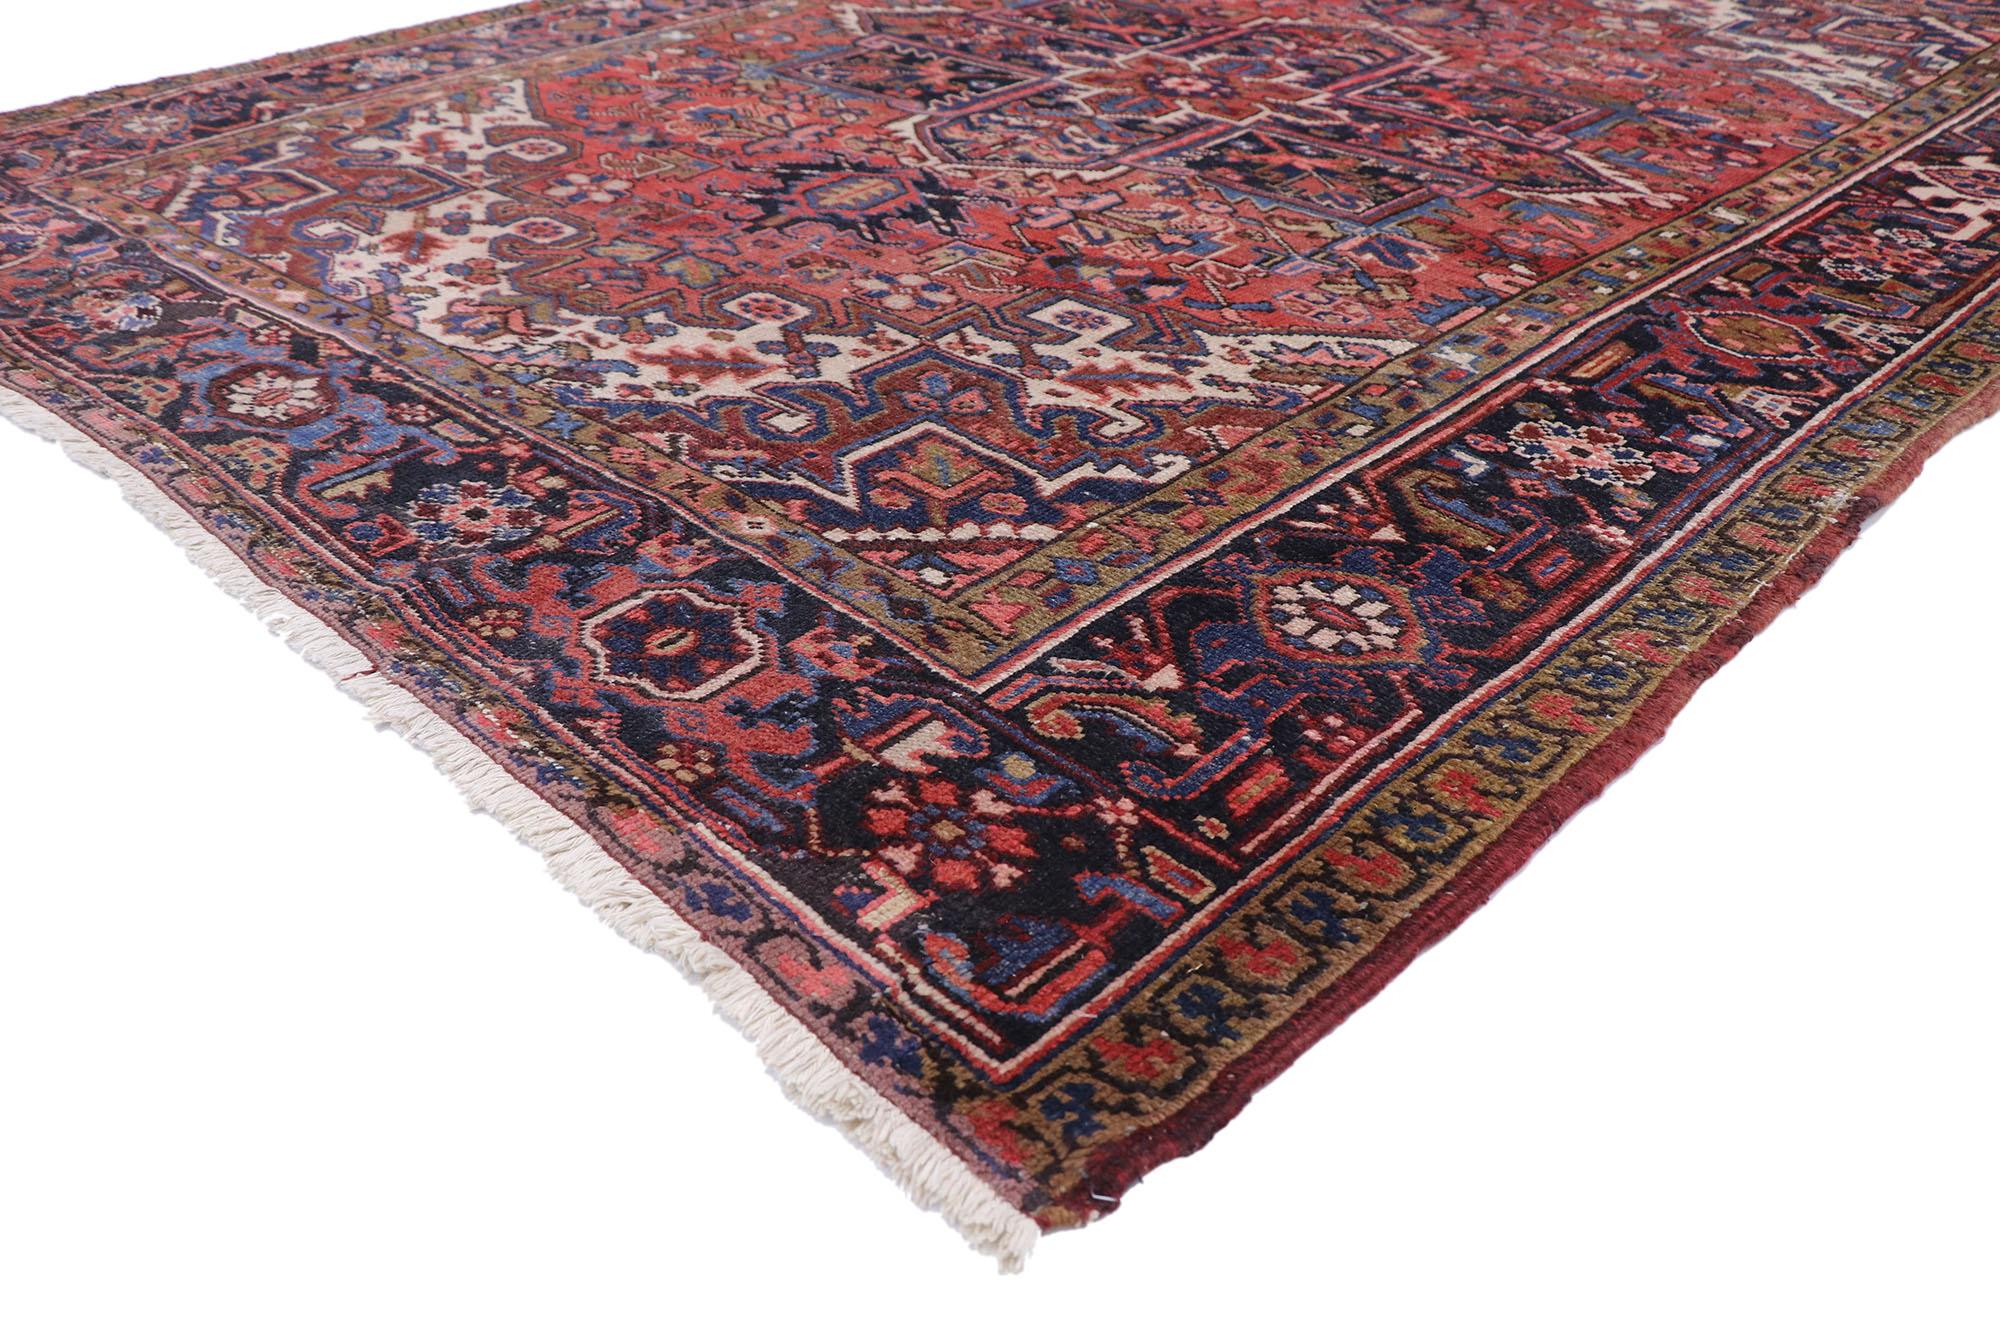 75862, Persischer Heriz-Teppich im Stil der amerikanischen Kolonialzeit. Traditionell und majestätisch mit satten Farben, dieser alte persische Heriz-Teppich im amerikanischen Kolonial- und Föderalstil besteht aus einem markanten kreuzförmigen